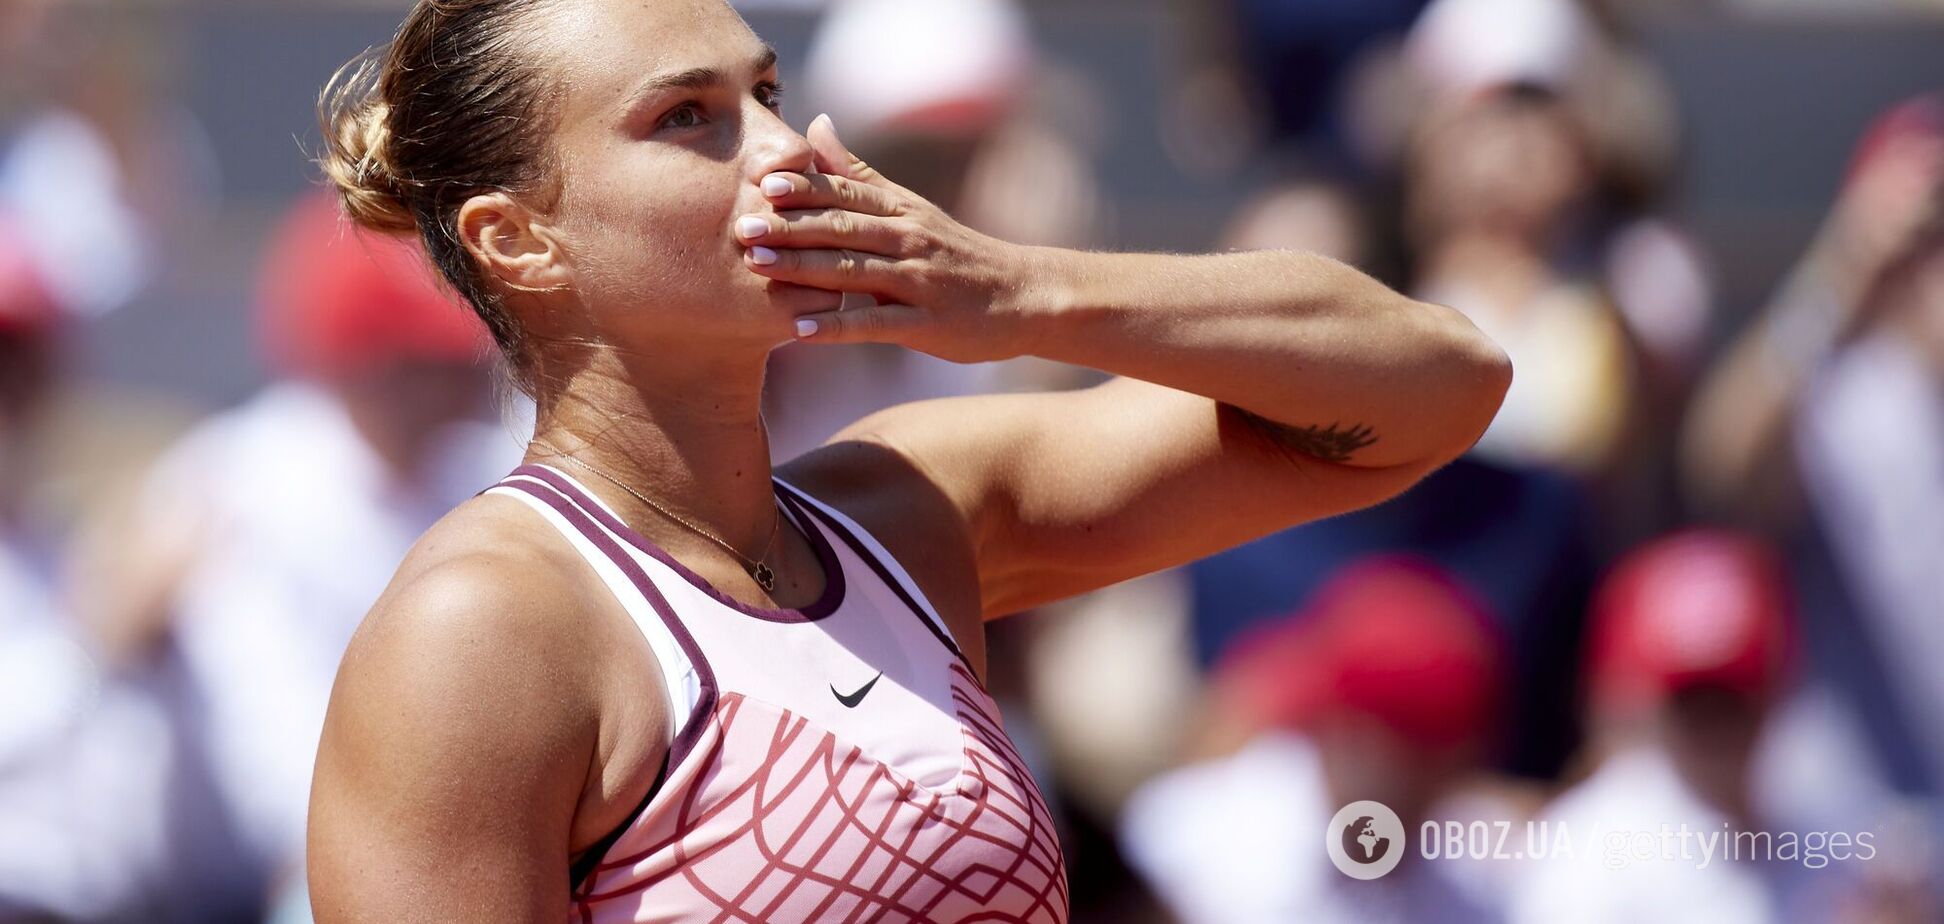 'Ради своего благополучия'. 1-я ракетка Беларуси совершила циничный поступок на Roland Garros